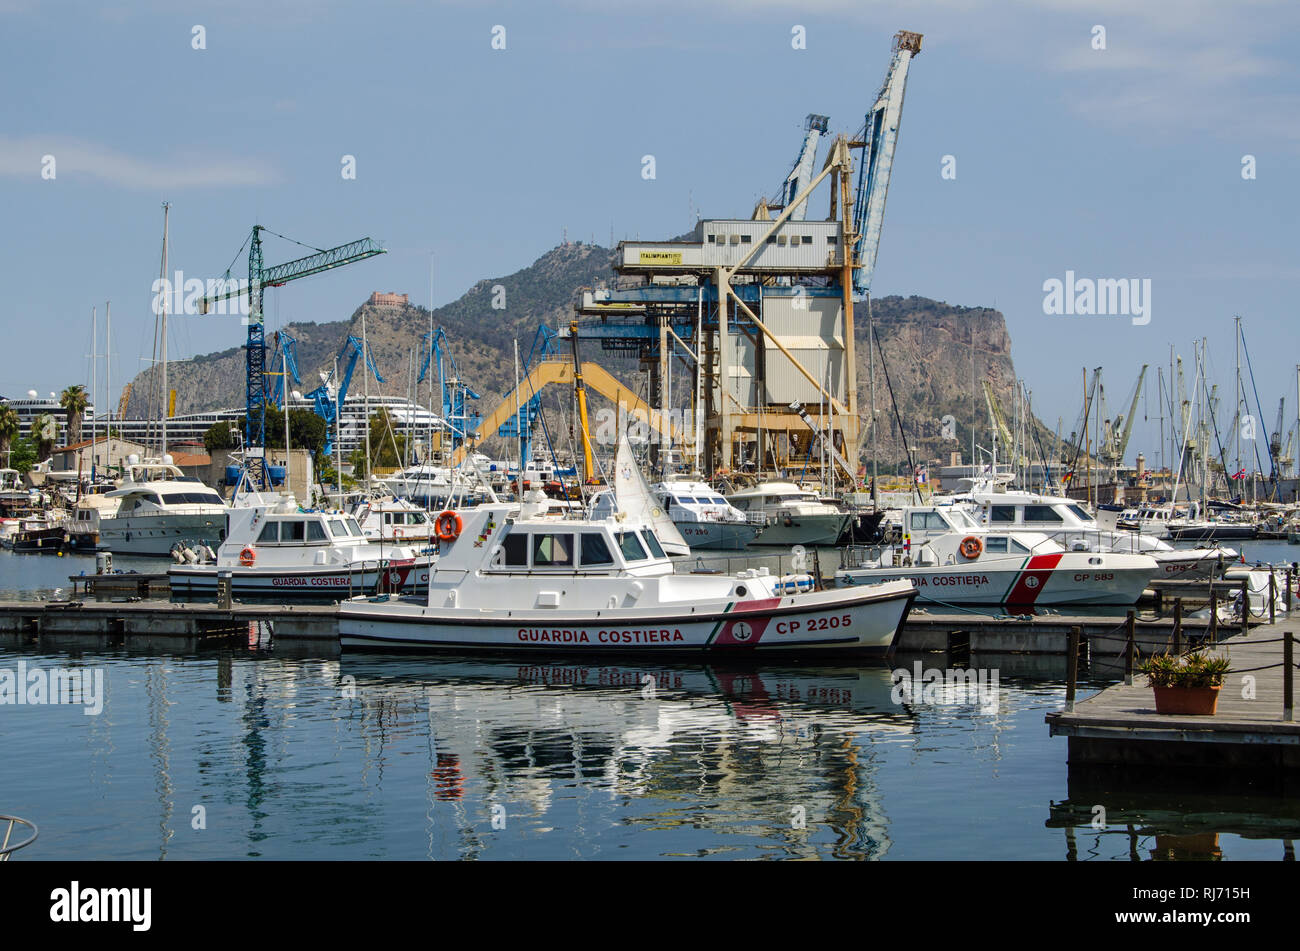 Palerme, Italie - le 18 juin 2018 : les navires appartenant à la garde-côtes italiens amarrés dans le port de Palerme, Sicile sur un matin d'été ensoleillé. Banque D'Images